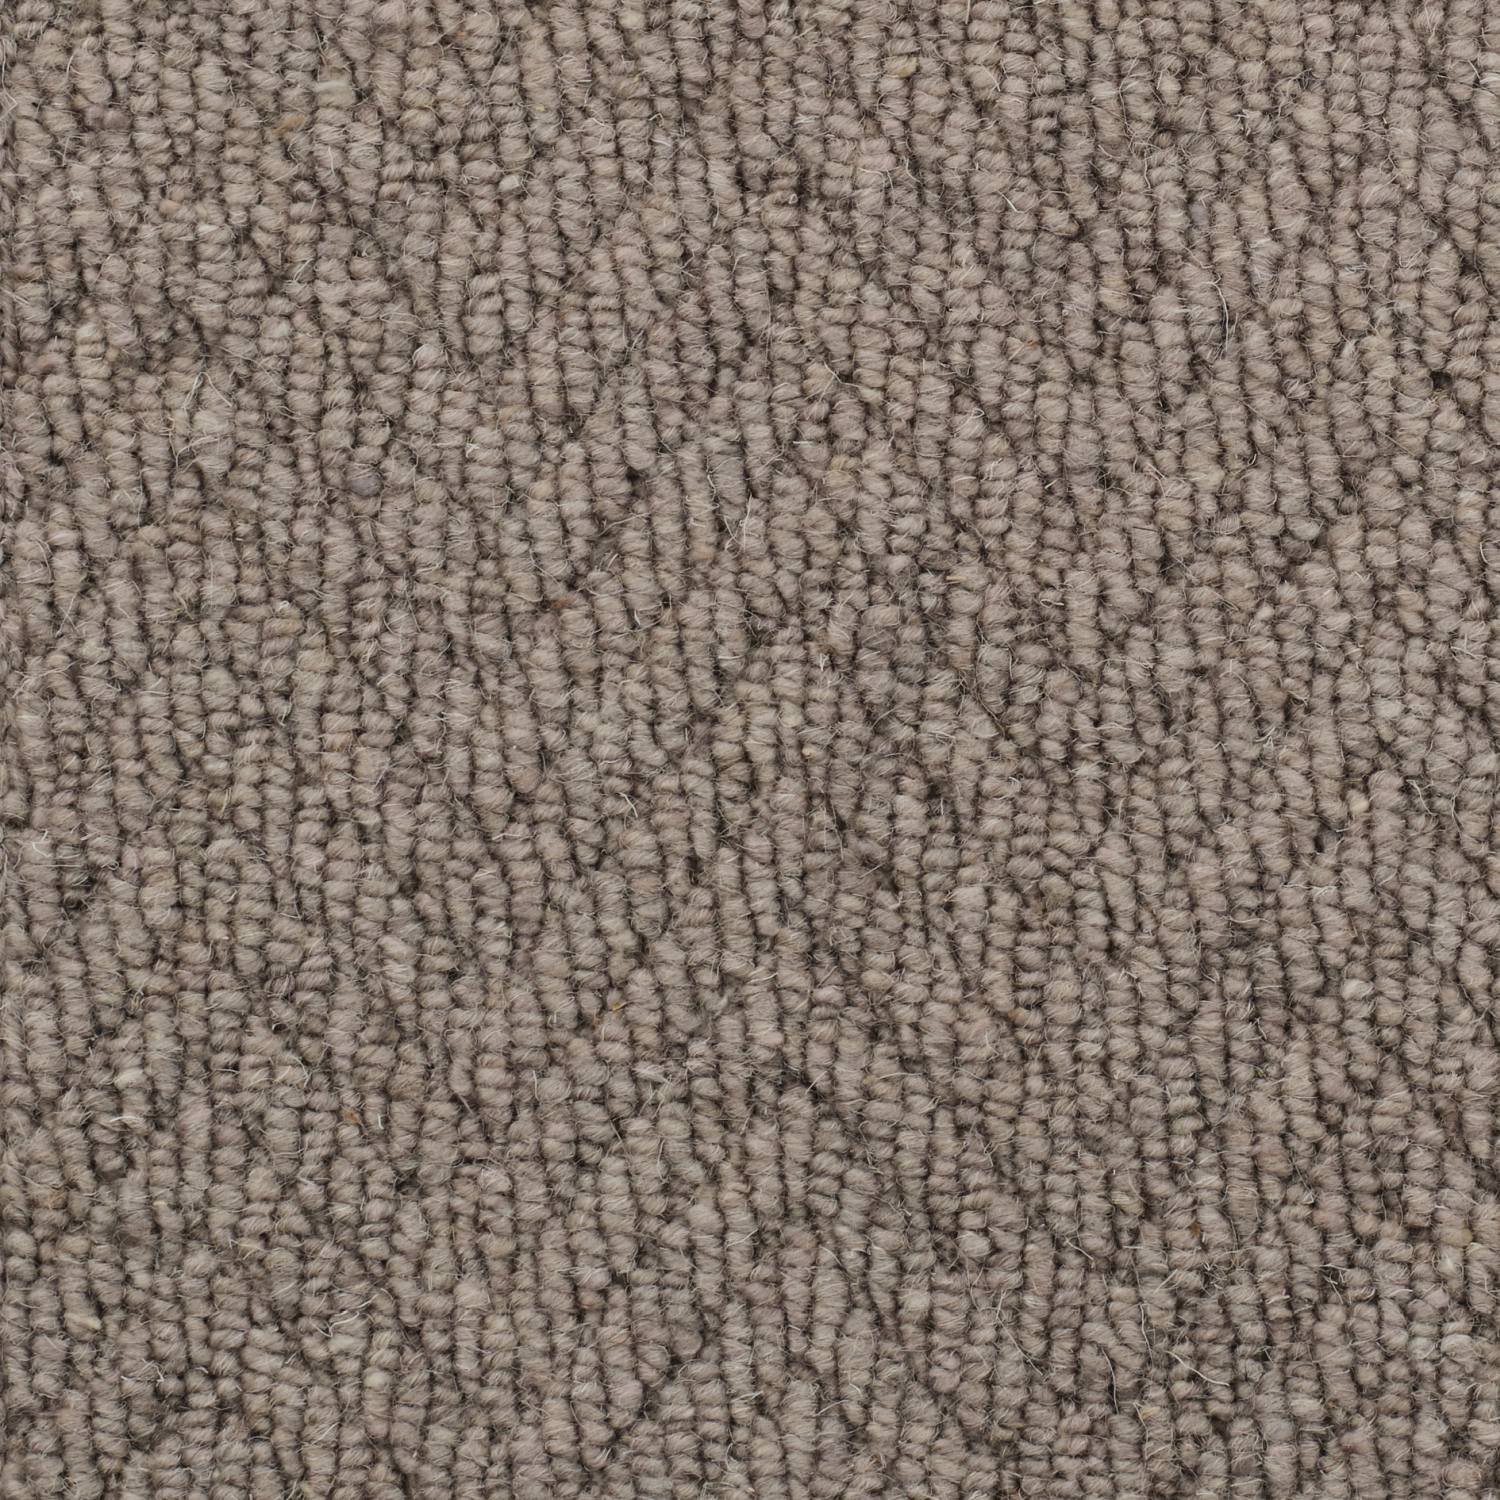 Natural Origins Loop Wool Carpet - Autumn Warmth Herringbone